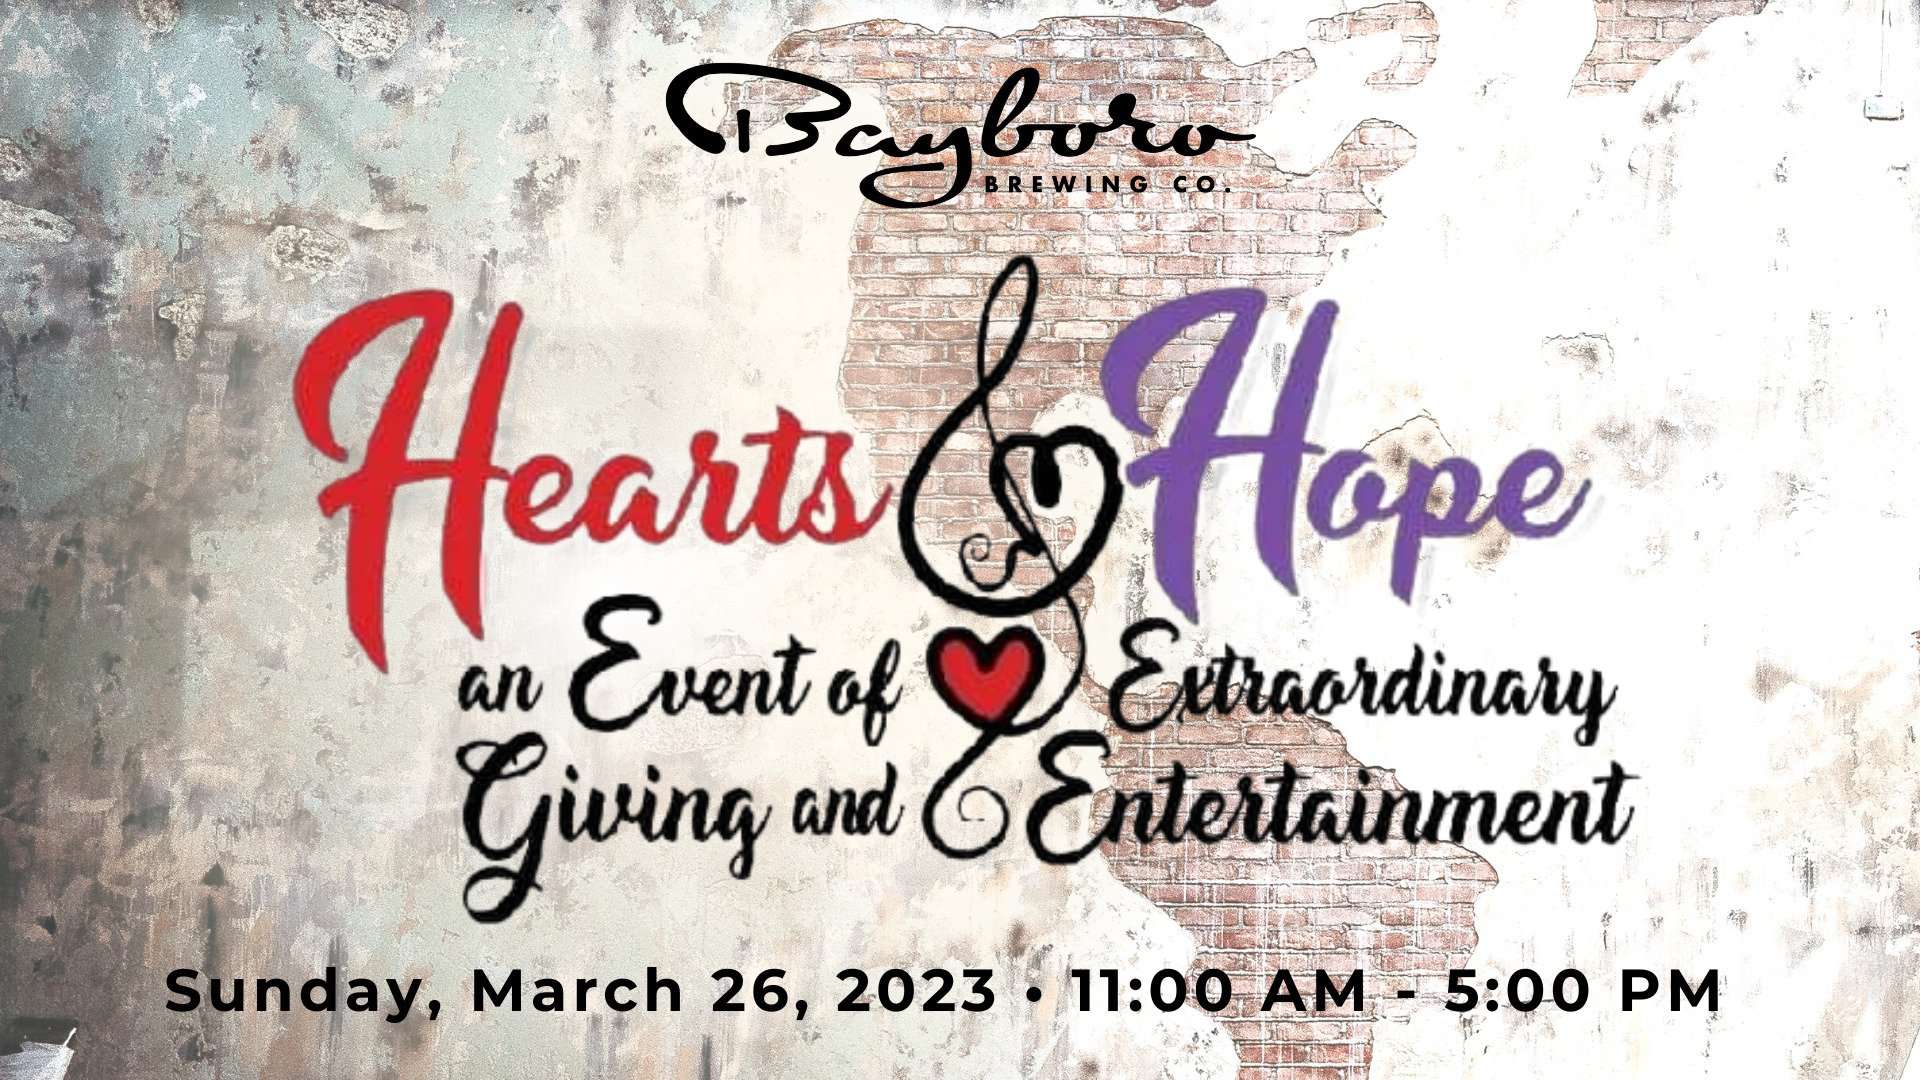 Hearts and Hope fundraiser at Bayboro Brewing